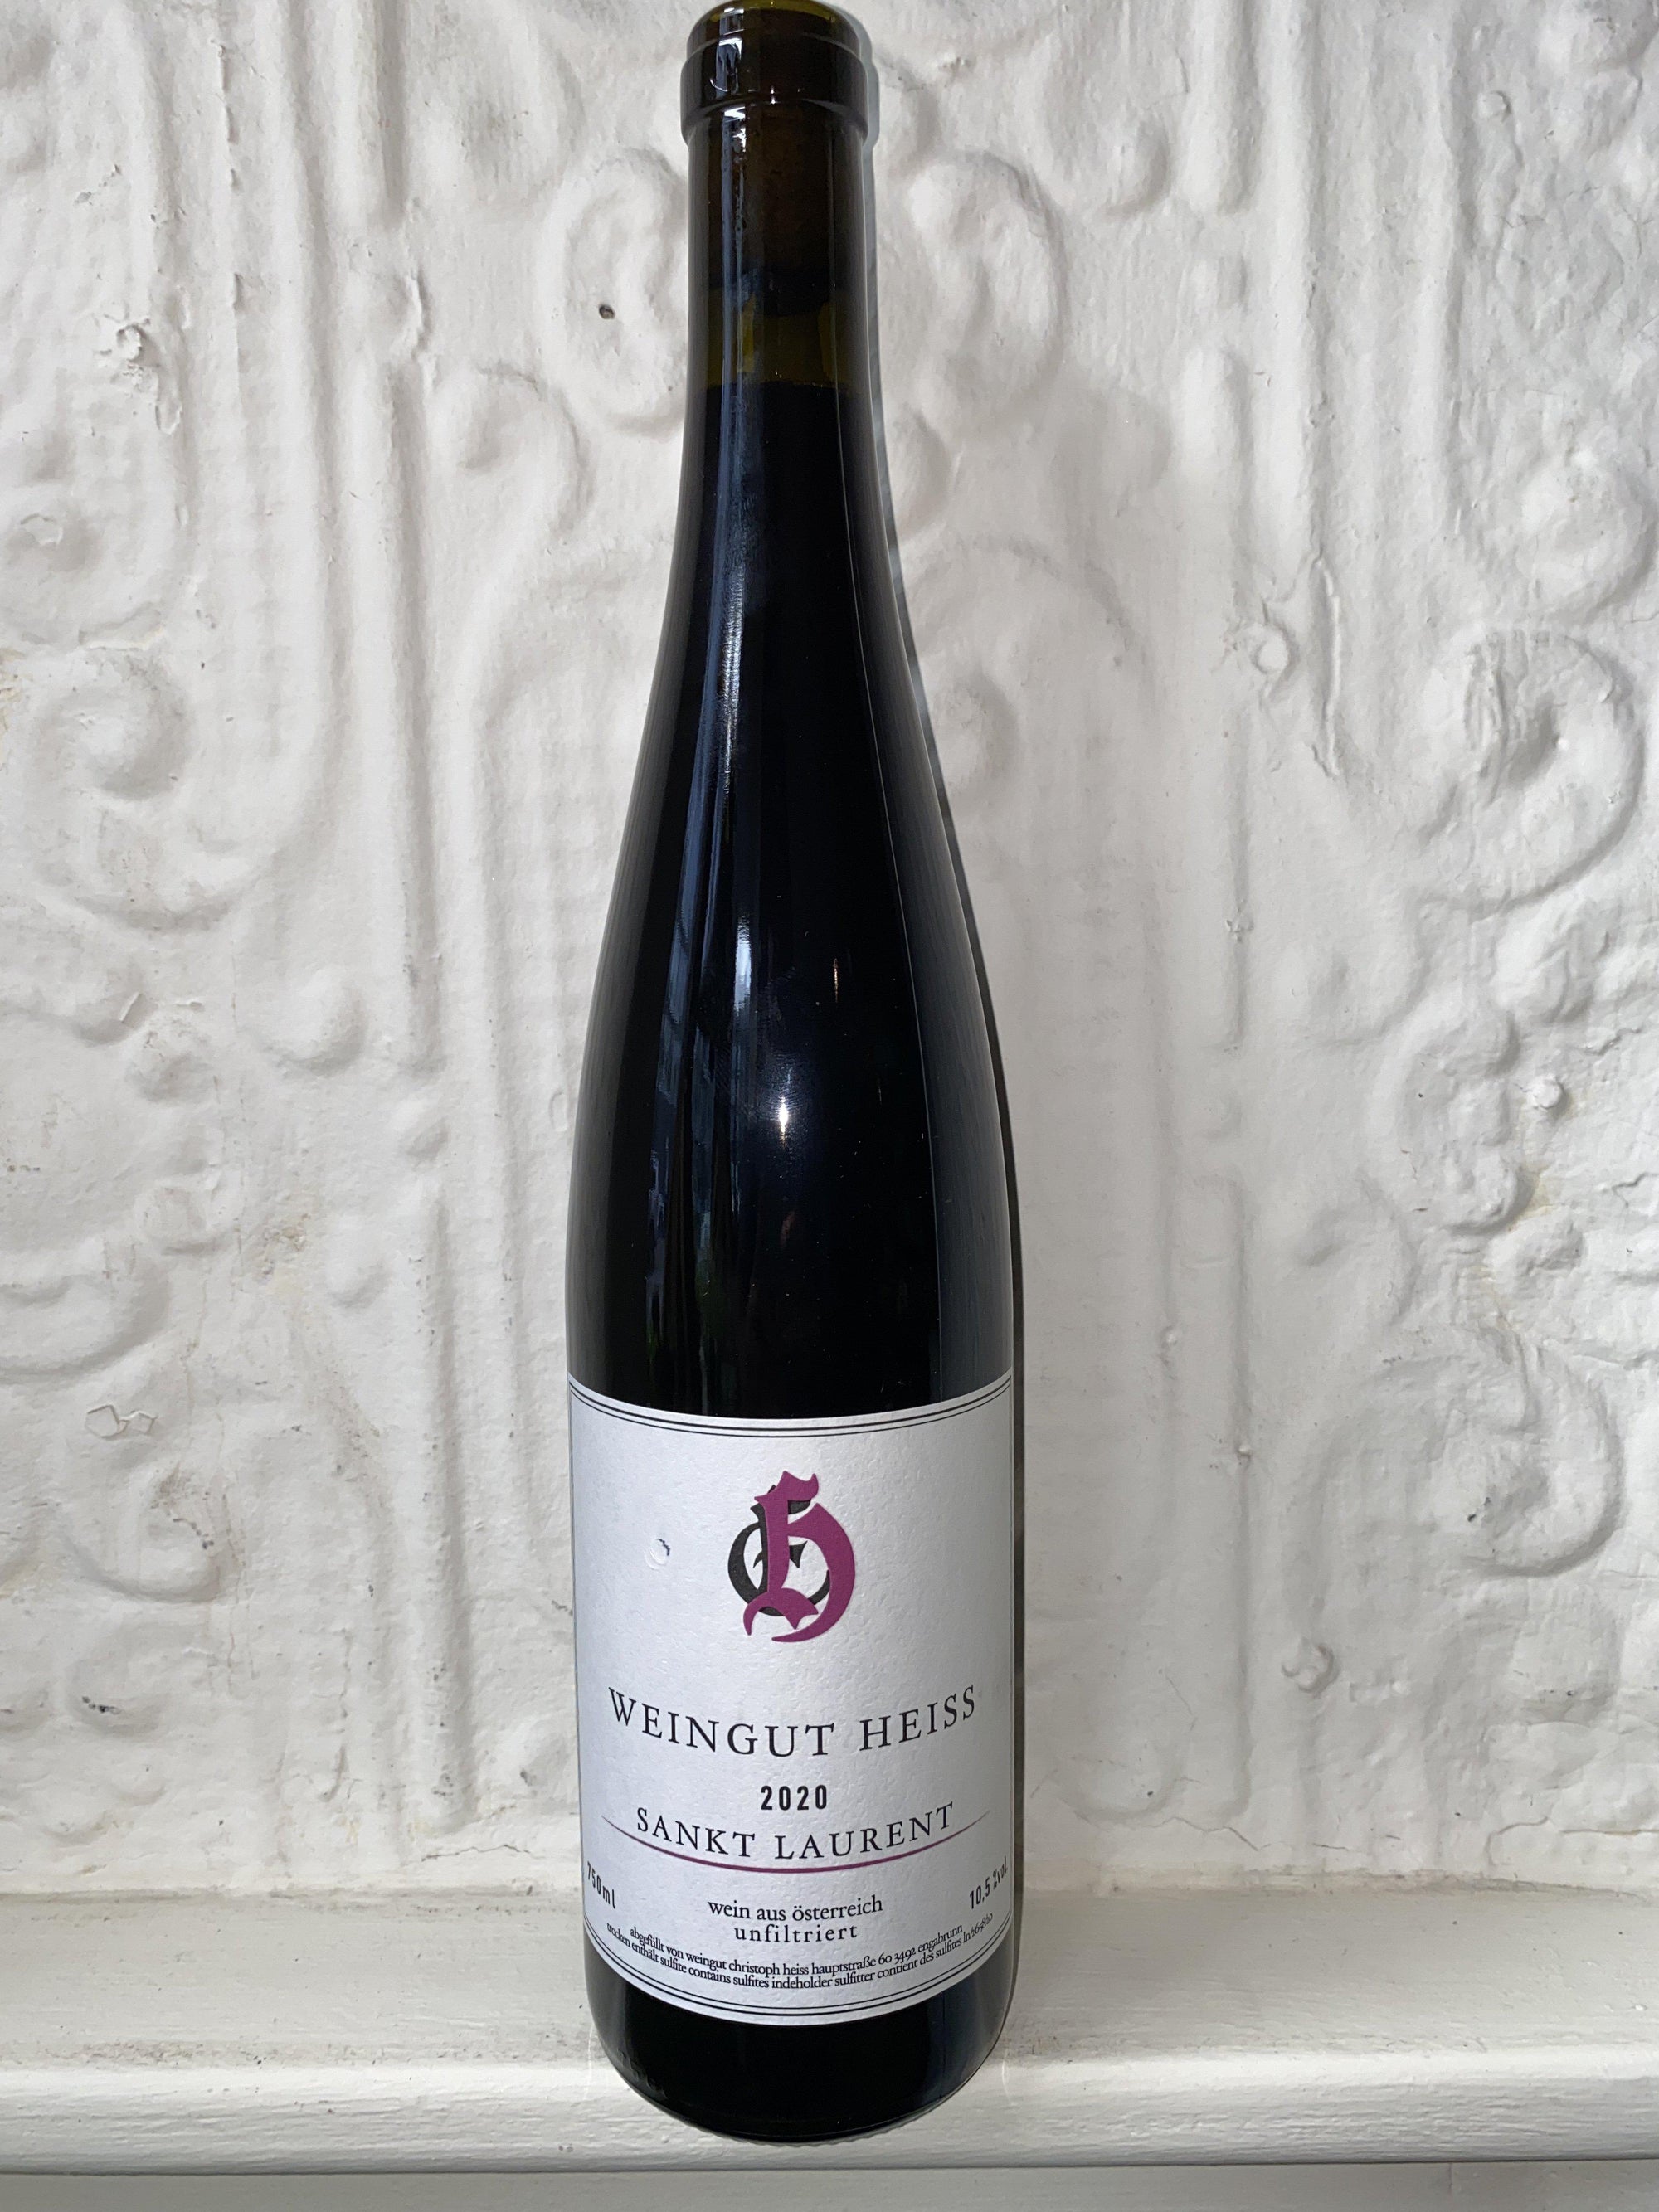 Sankt Laurent, Weingut Heiss 2020 (Burgenland, Austria)-Wine-Bibber & Bell